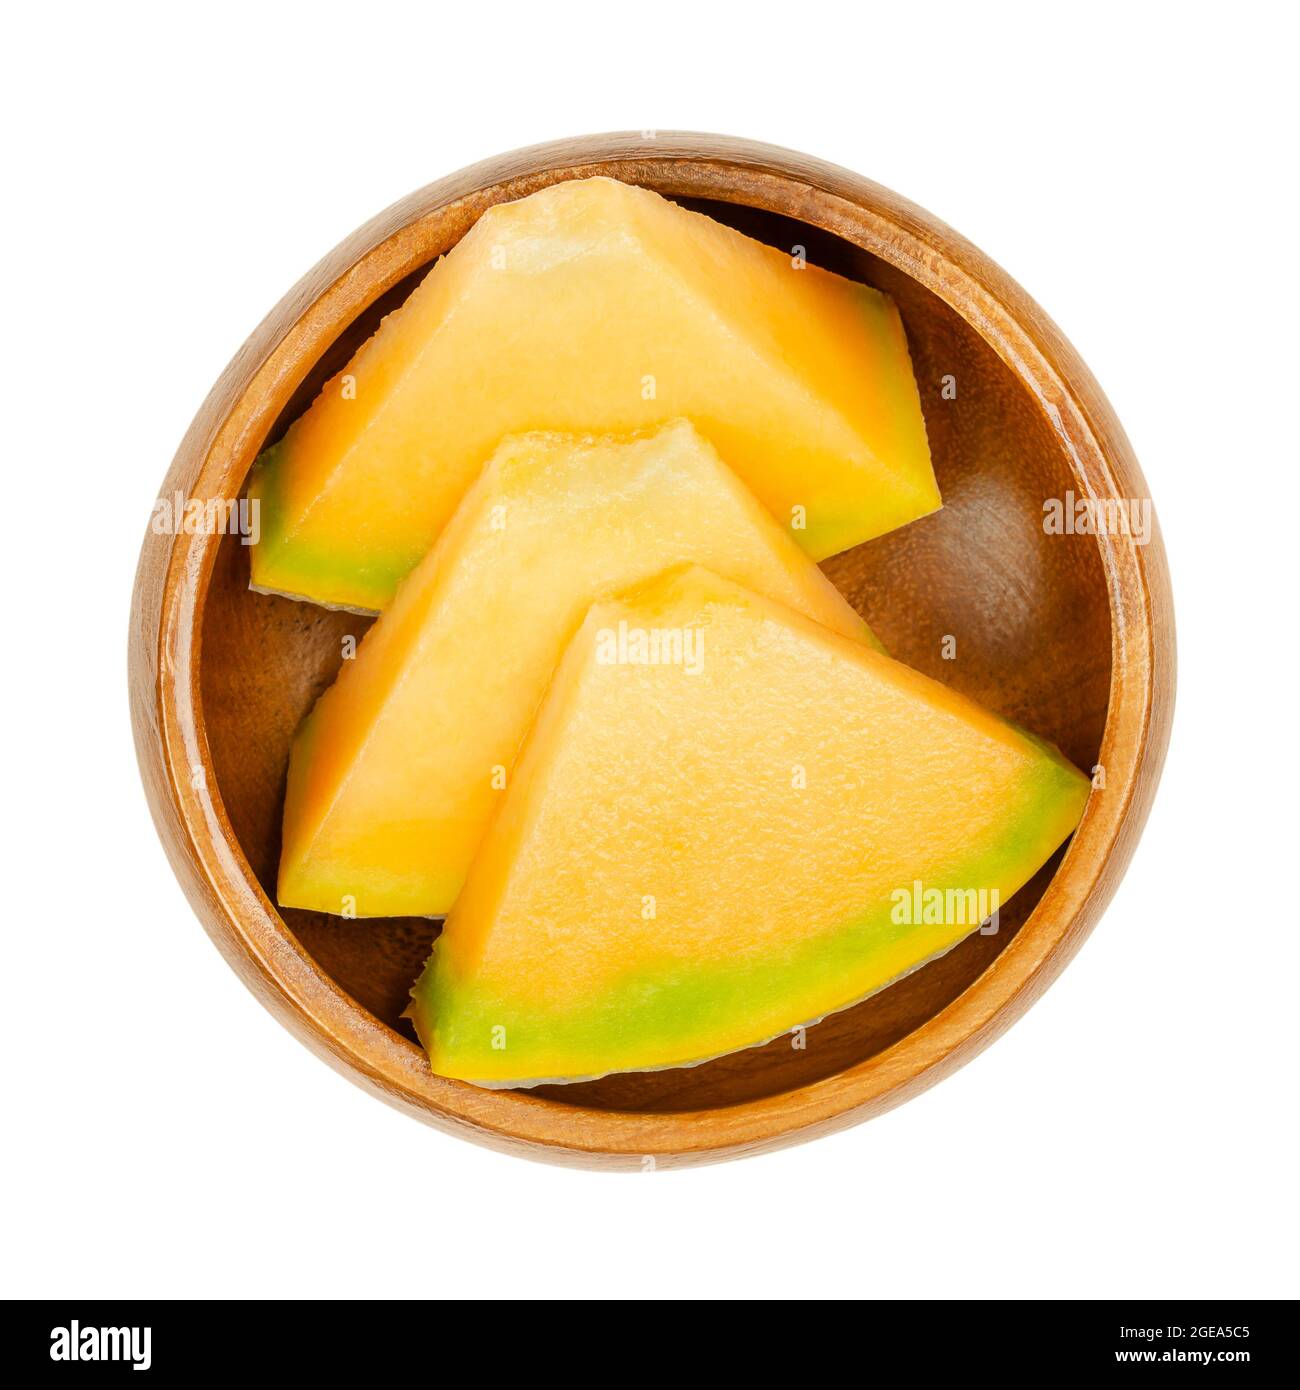 Fette di melone di Cantalupe al miele, in una ciotola di legno. Pezzi triangolari pronti da mangiare di frutta fresca tagliata e matura. Melone ibrido della specie Cucumis melo. Foto Stock